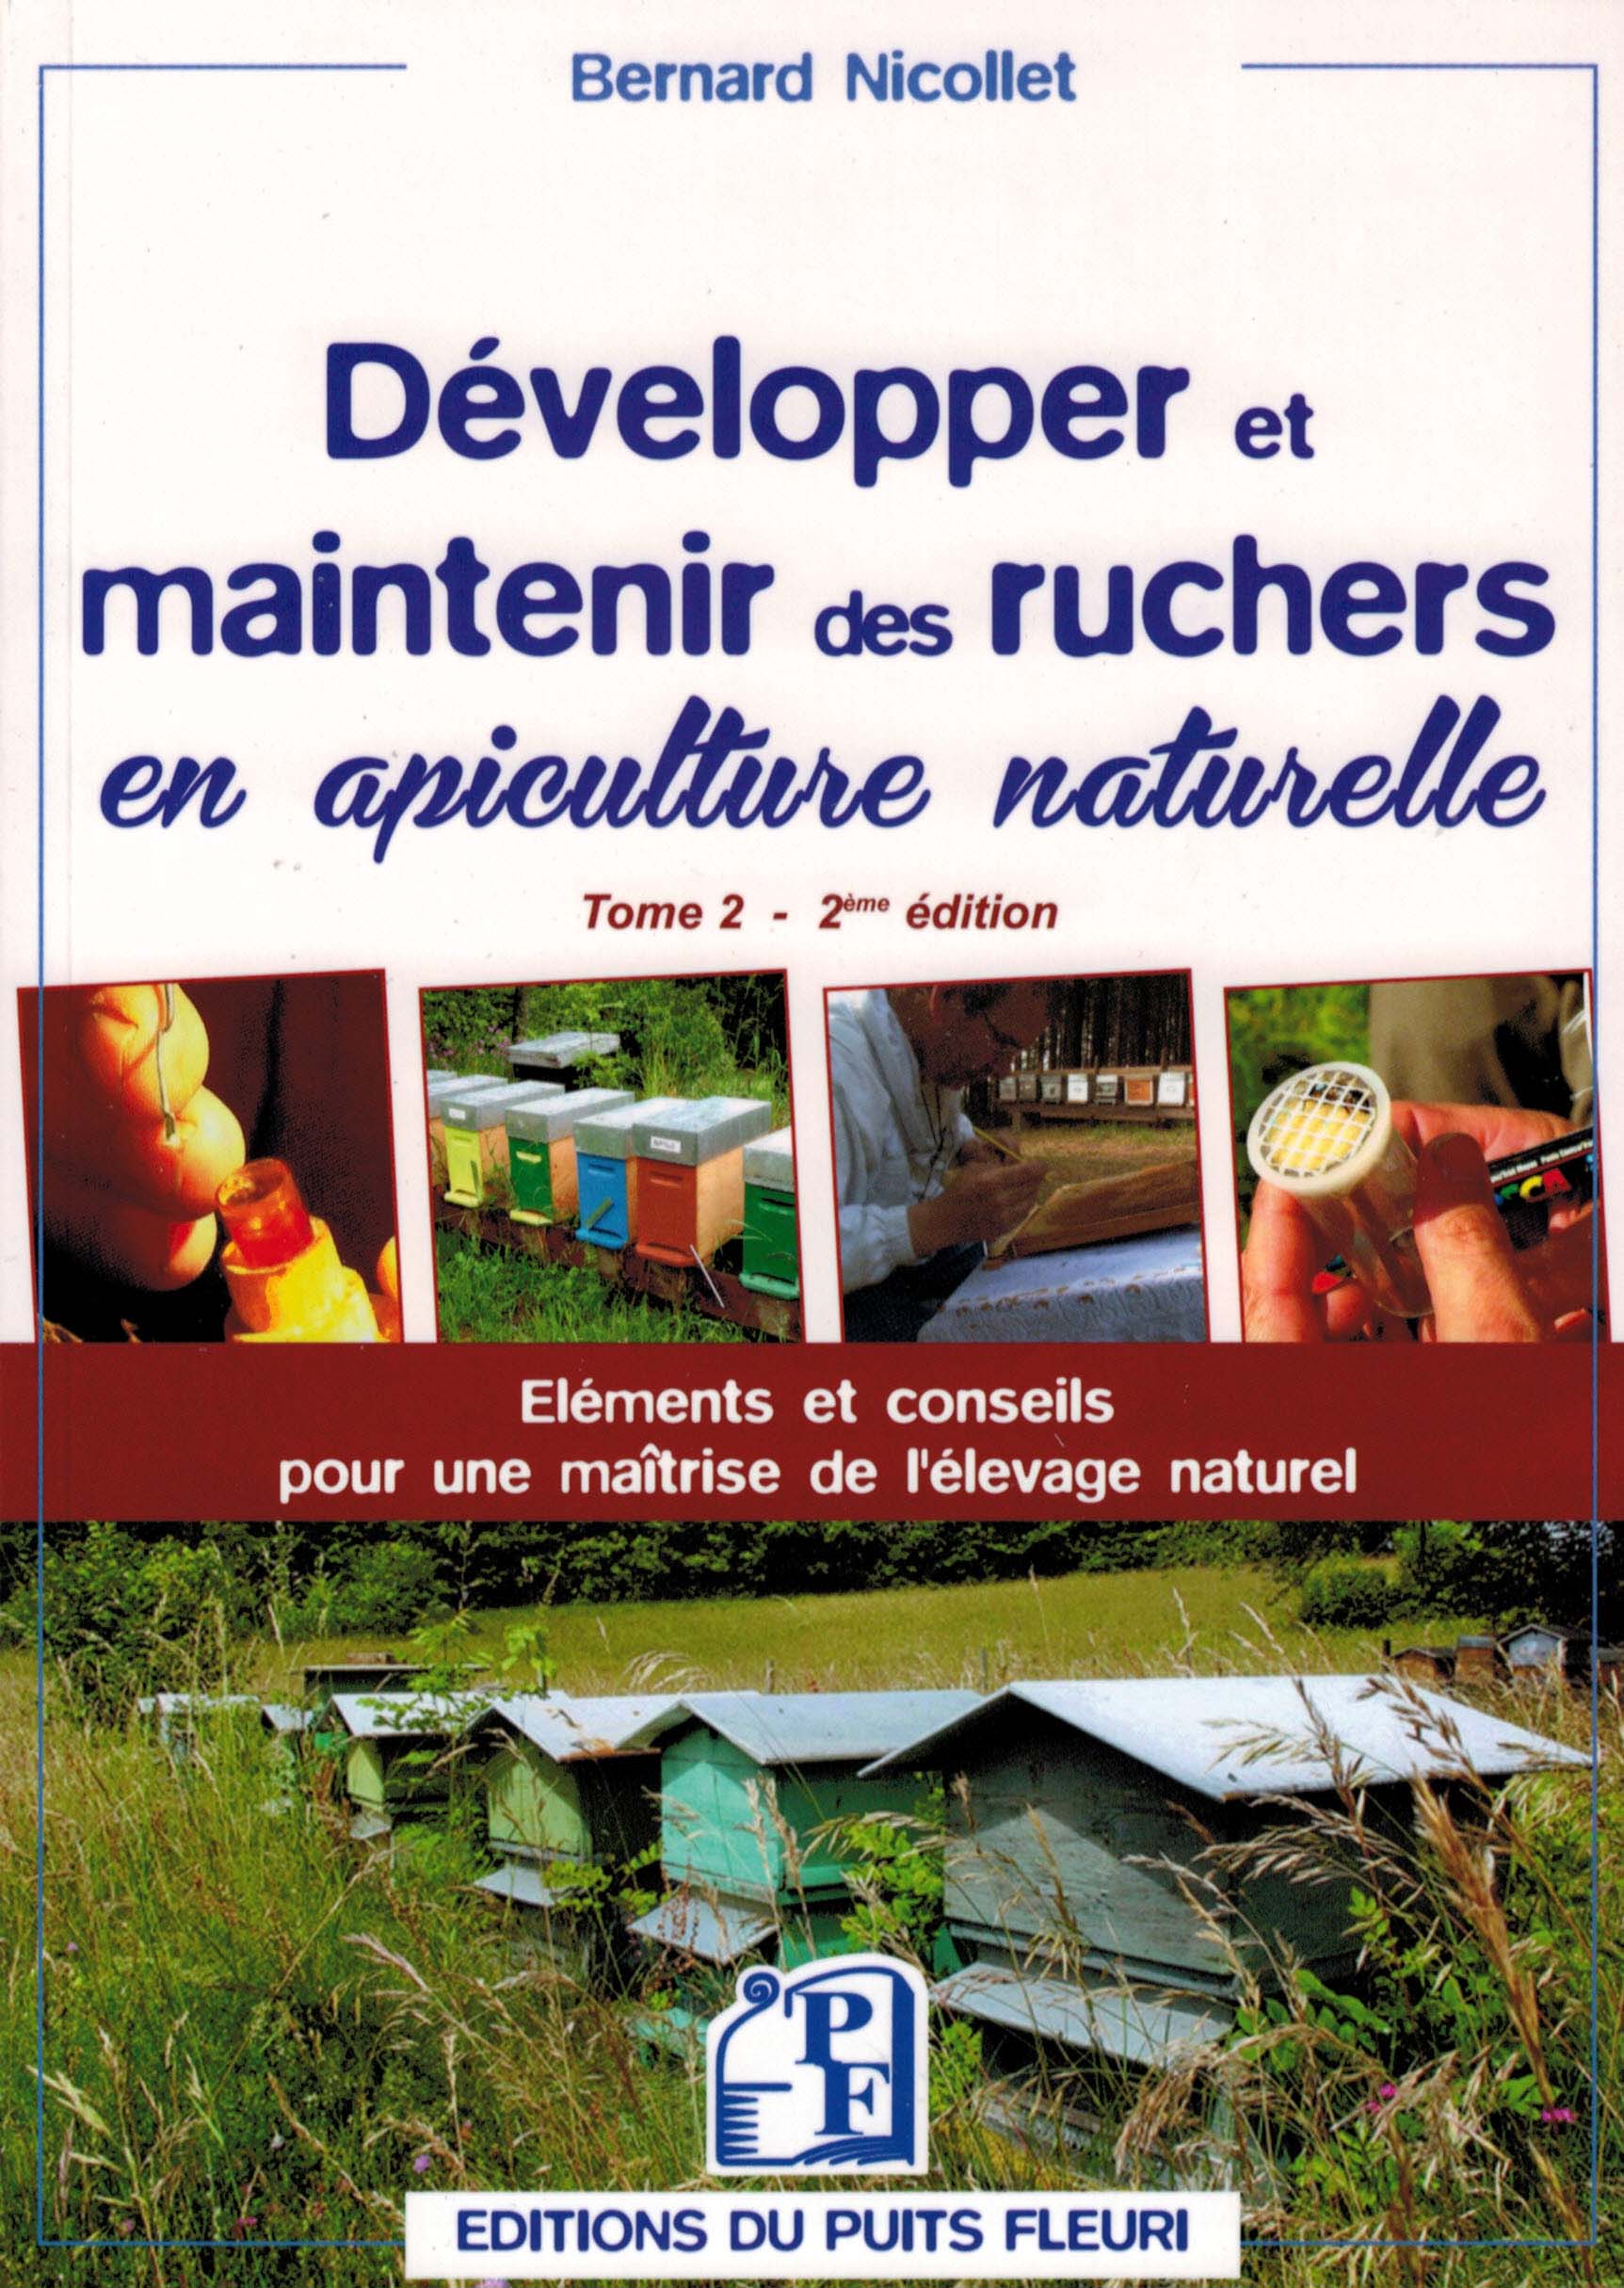 Cover of Développer et maintenir des ruchers en apiculture naturelle